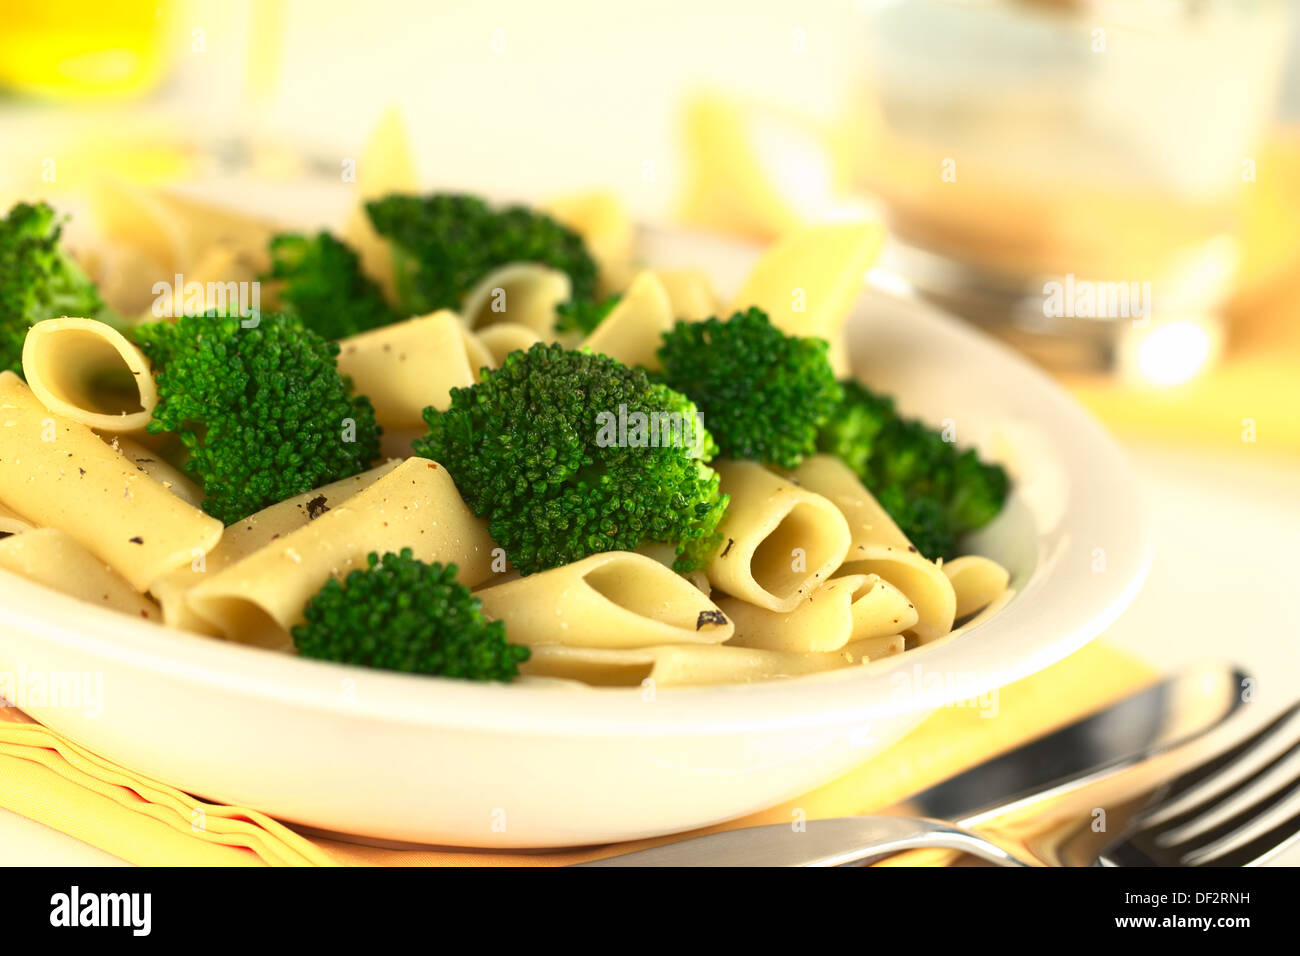 Le brocoli avec des pâtes (Selective Focus, Focus sur le brocoli dans le milieu de l'image) Banque D'Images